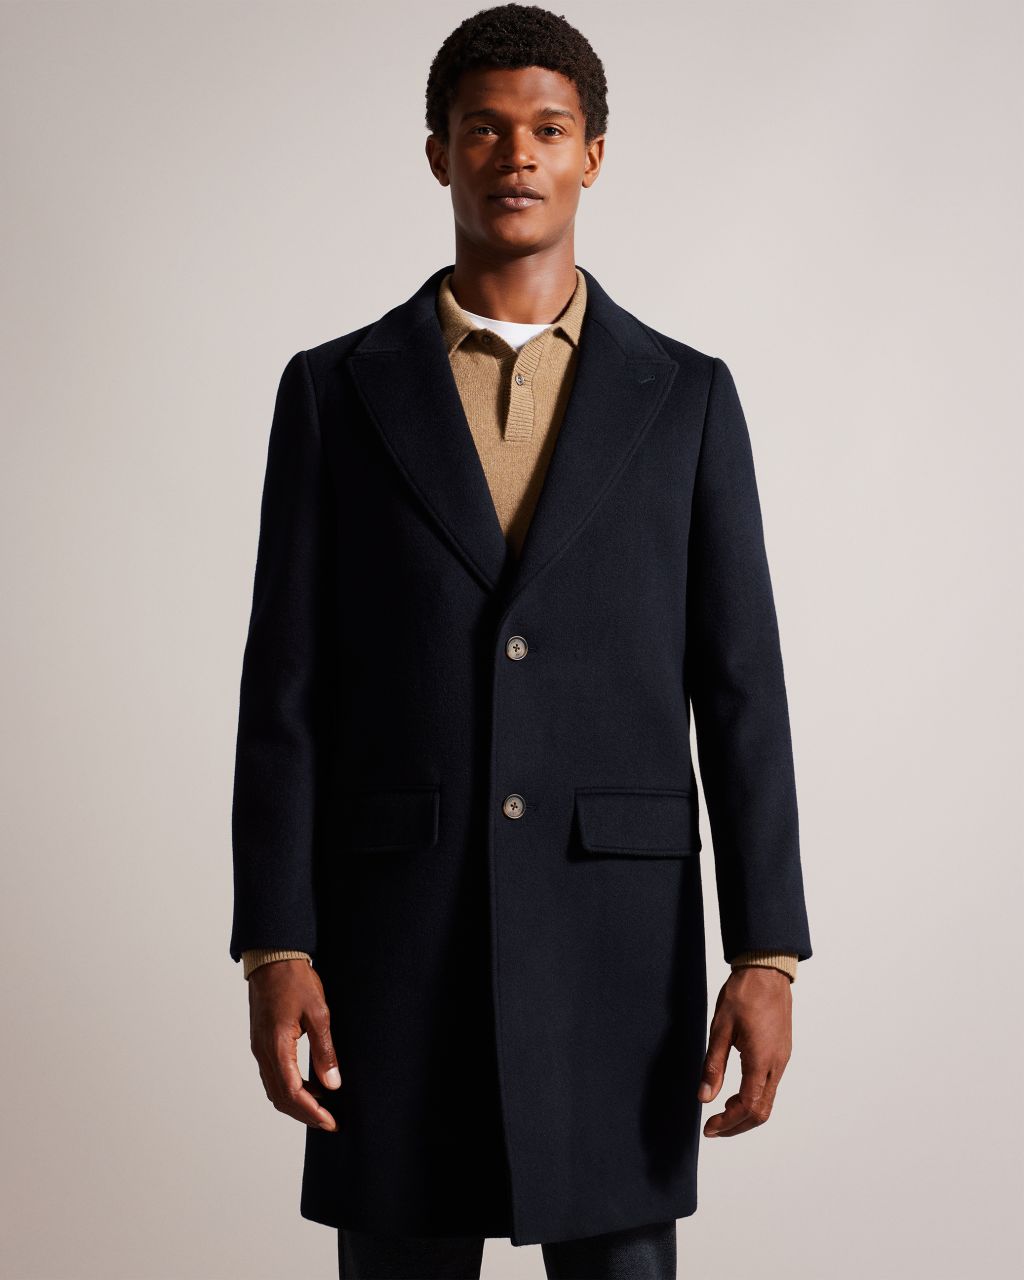 Men's Wool Blend Overcoat in Navy, Wilding product